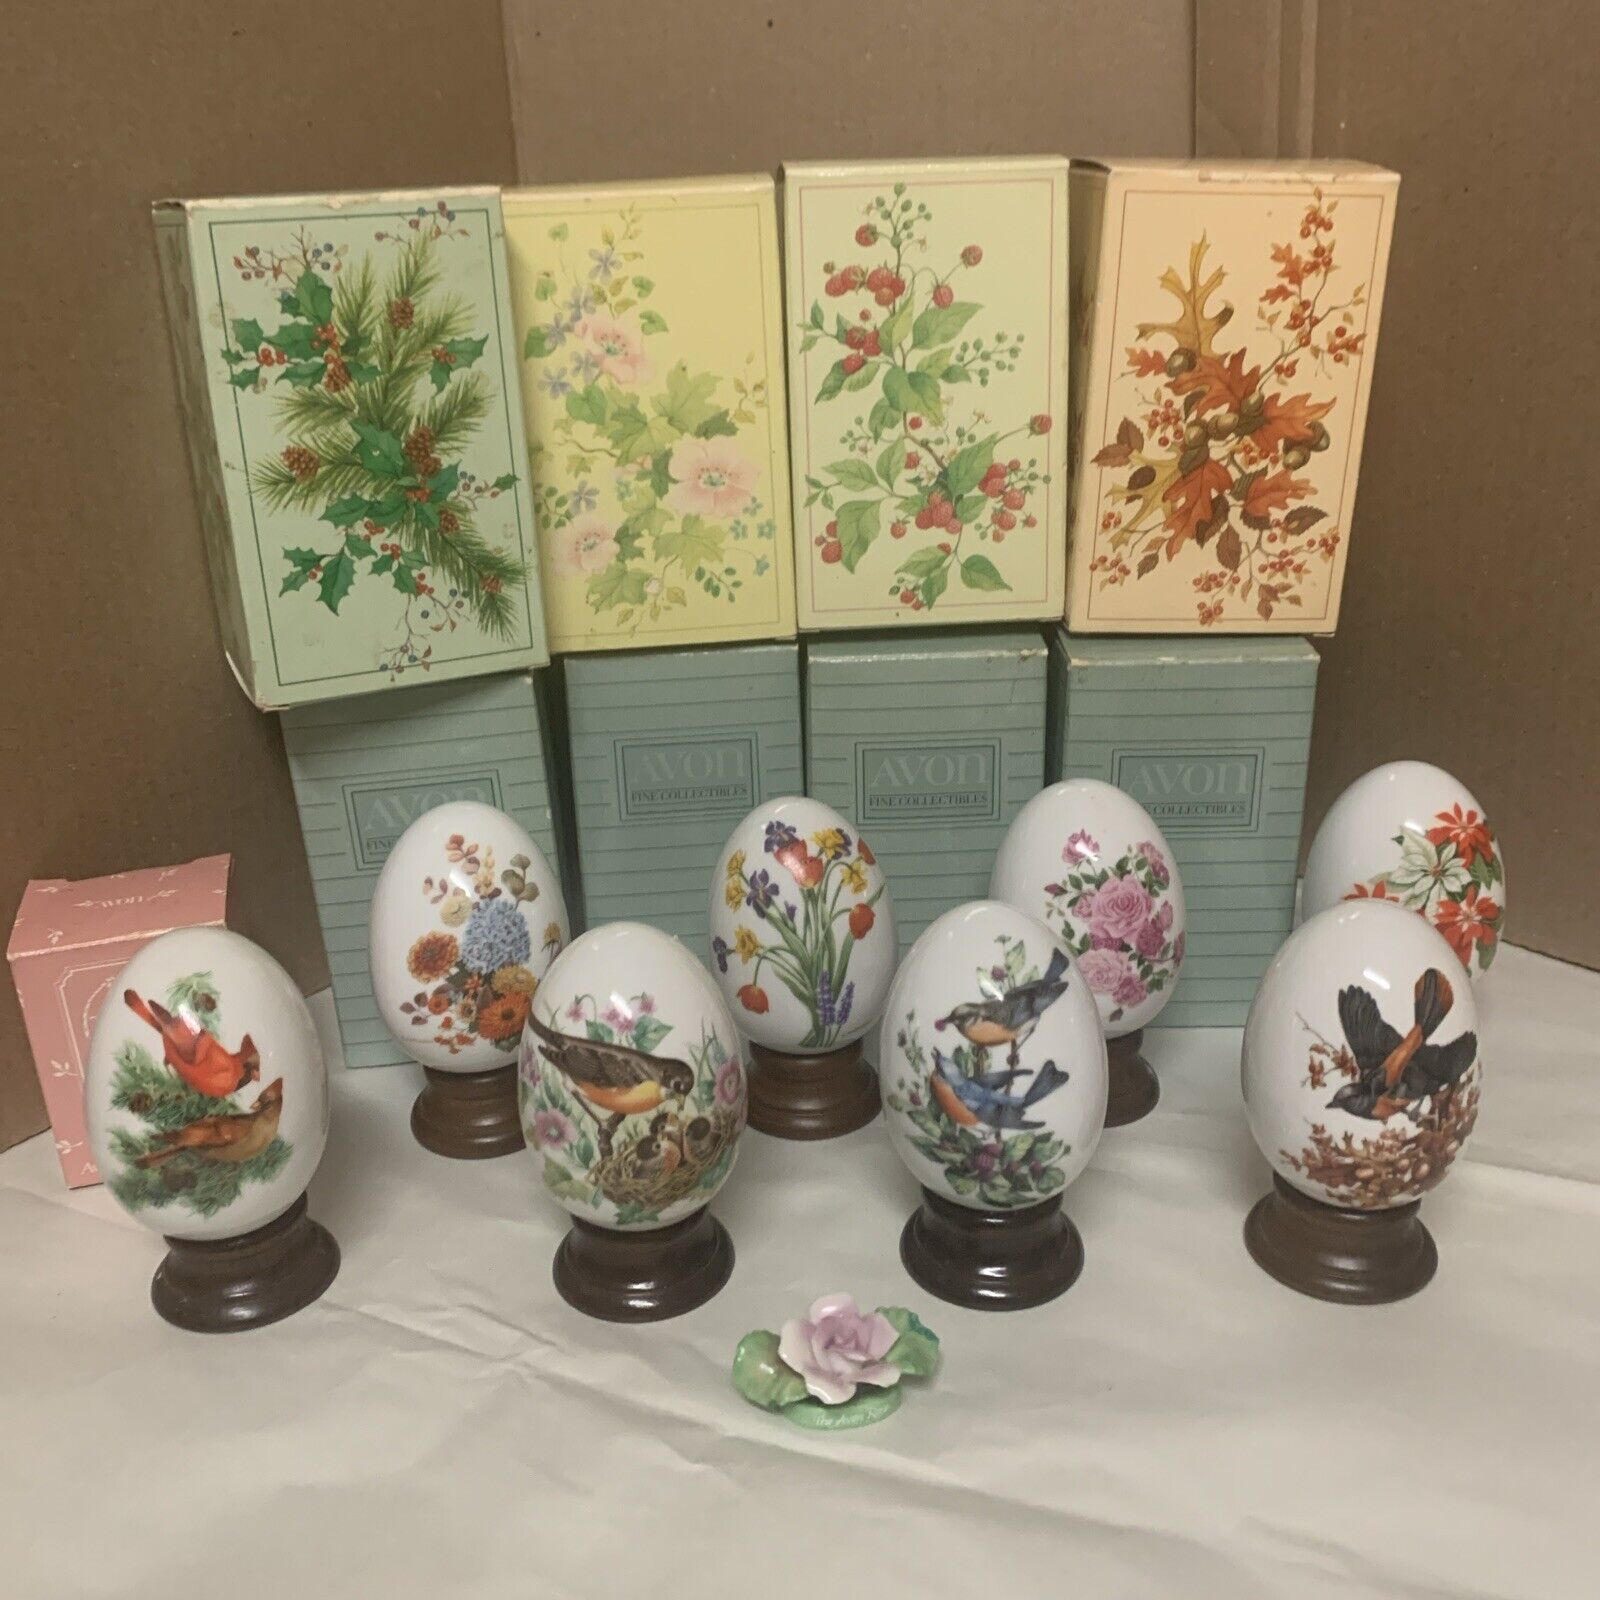 8-Vintage Avon Four Seasons Porcelain Eggs w/Wood Stands Birds & Flowers 1987/84